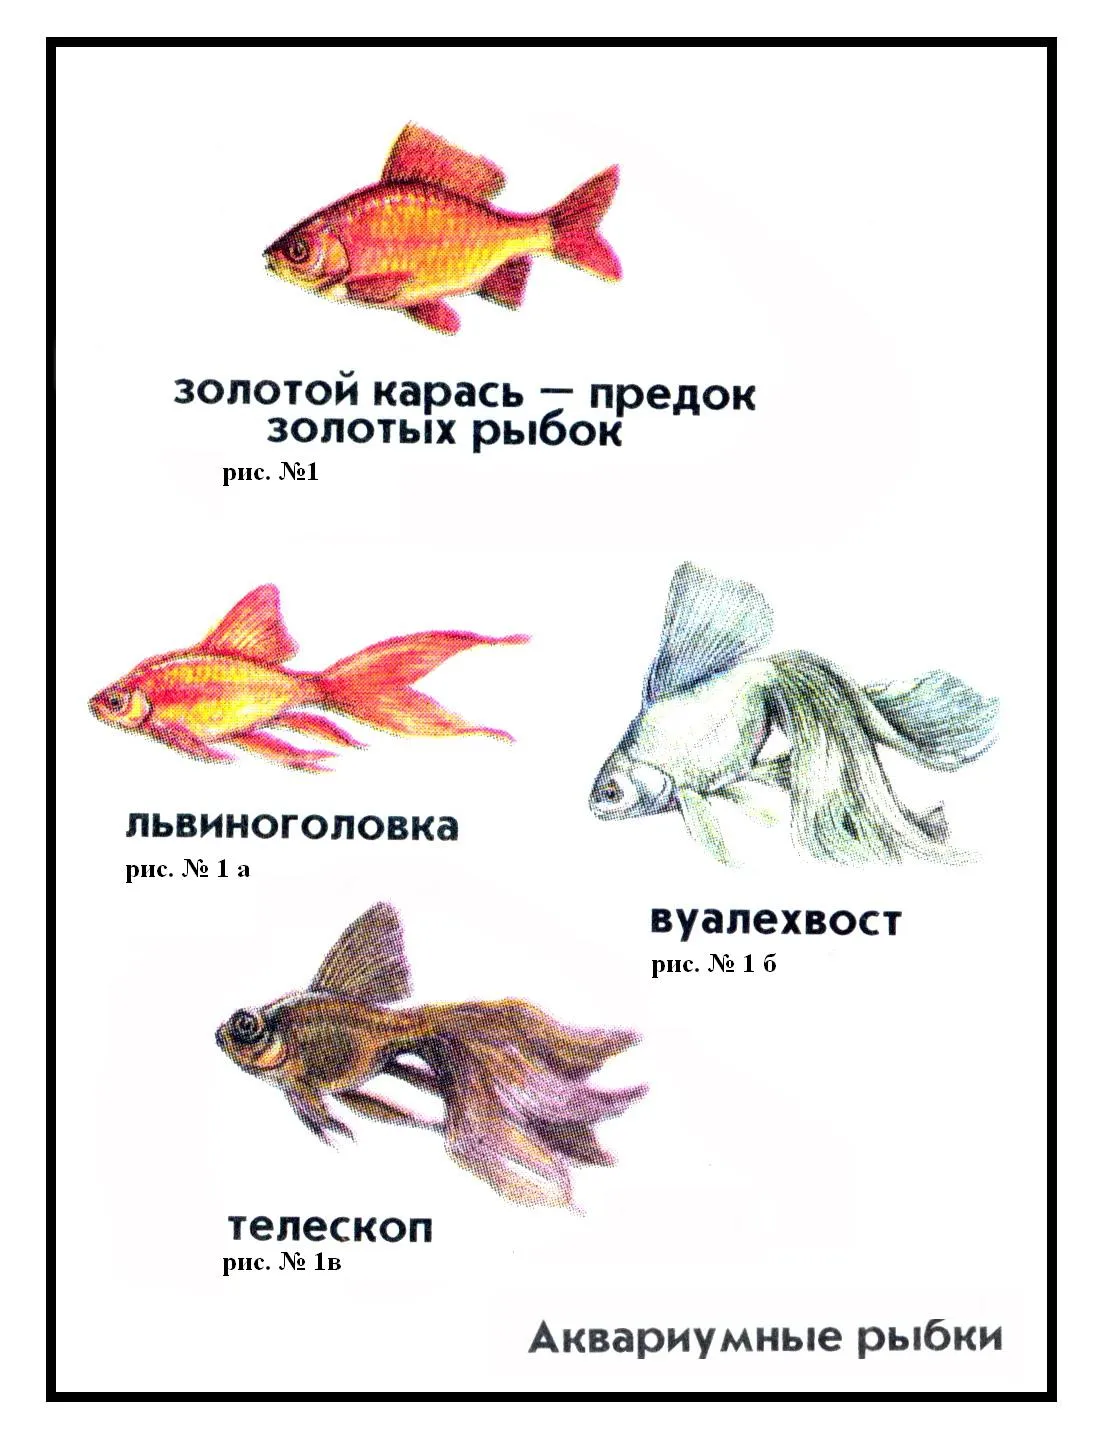 Аквариумные рыбки для детей. Аквариумные рыбки с названиями для детей. Аквариумные рыбы для детей с названиями. Аквариумные рыбки для дошкольников. Аквариумные рыбы для детей